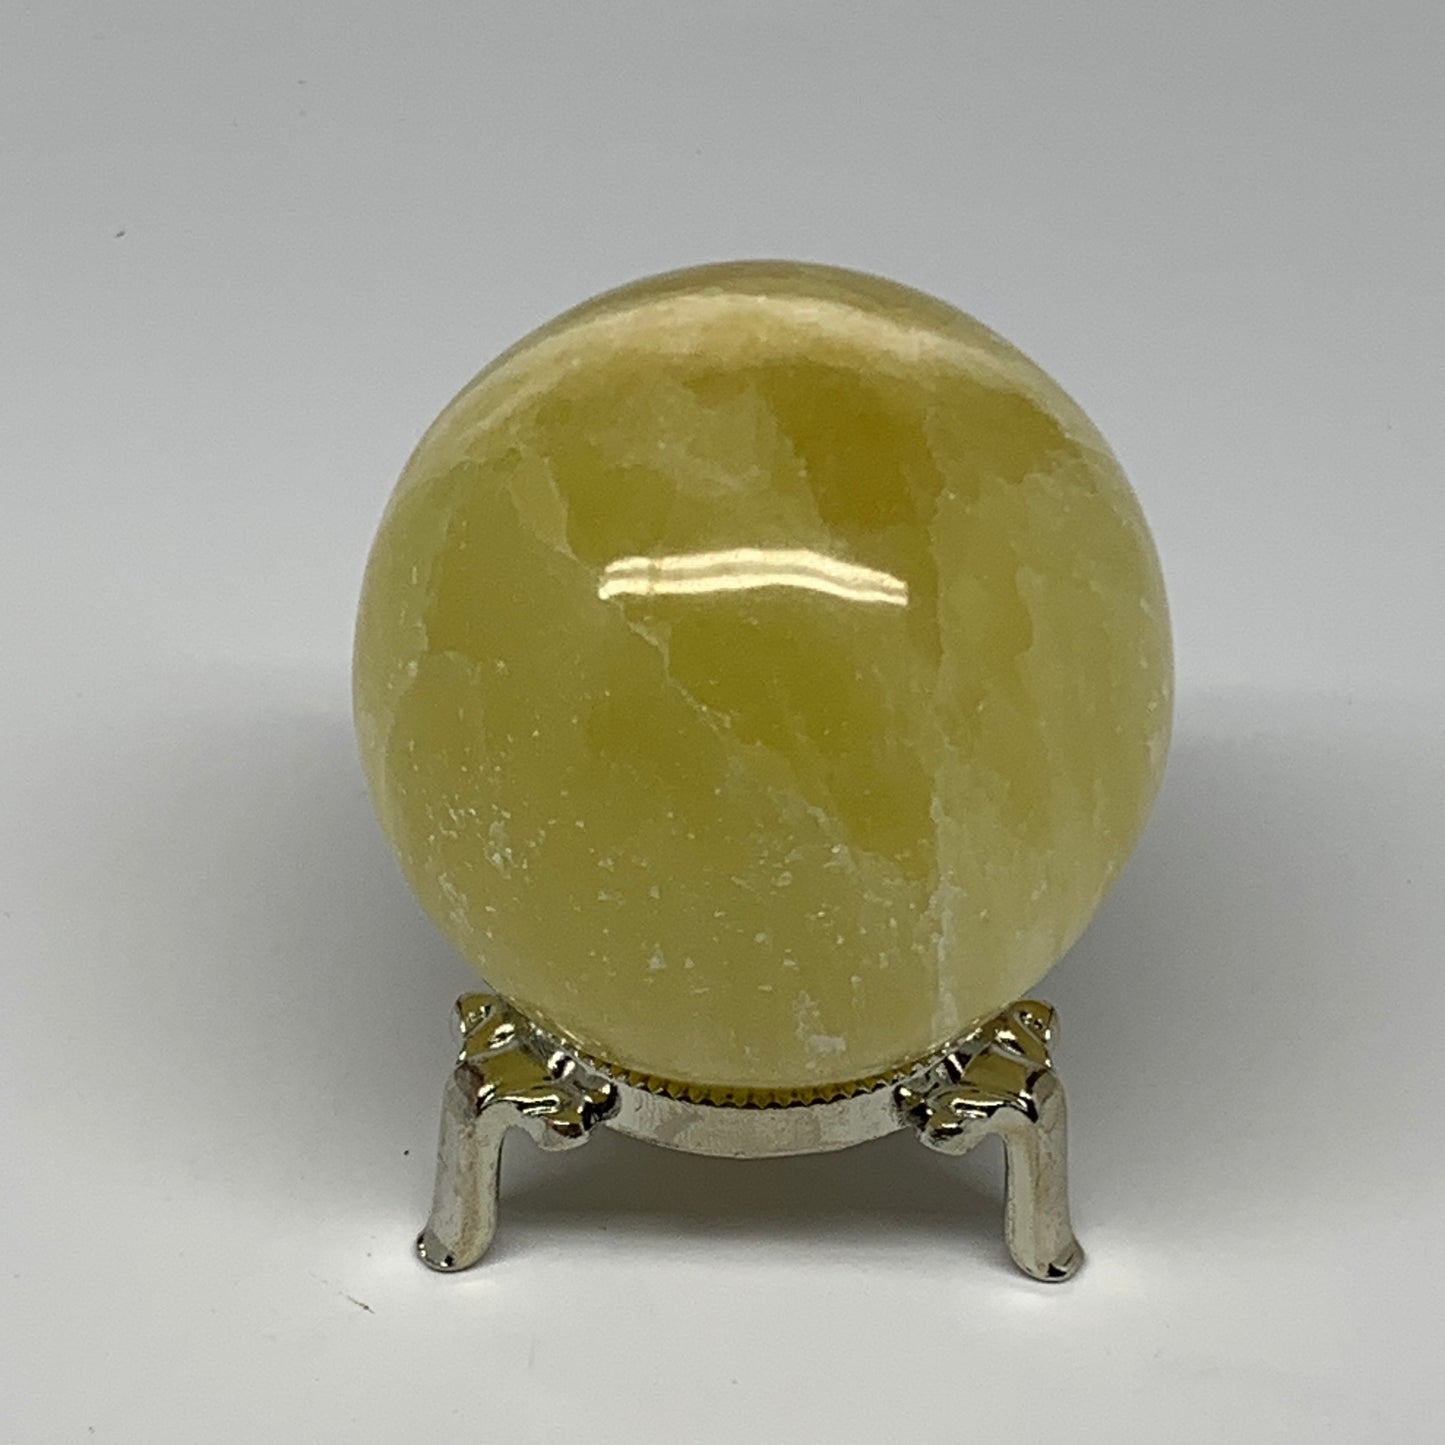 0.91 lbs,2.6"(65mm) Lemon Calcite Sphere Gemstone,Healing Crystal,B260948